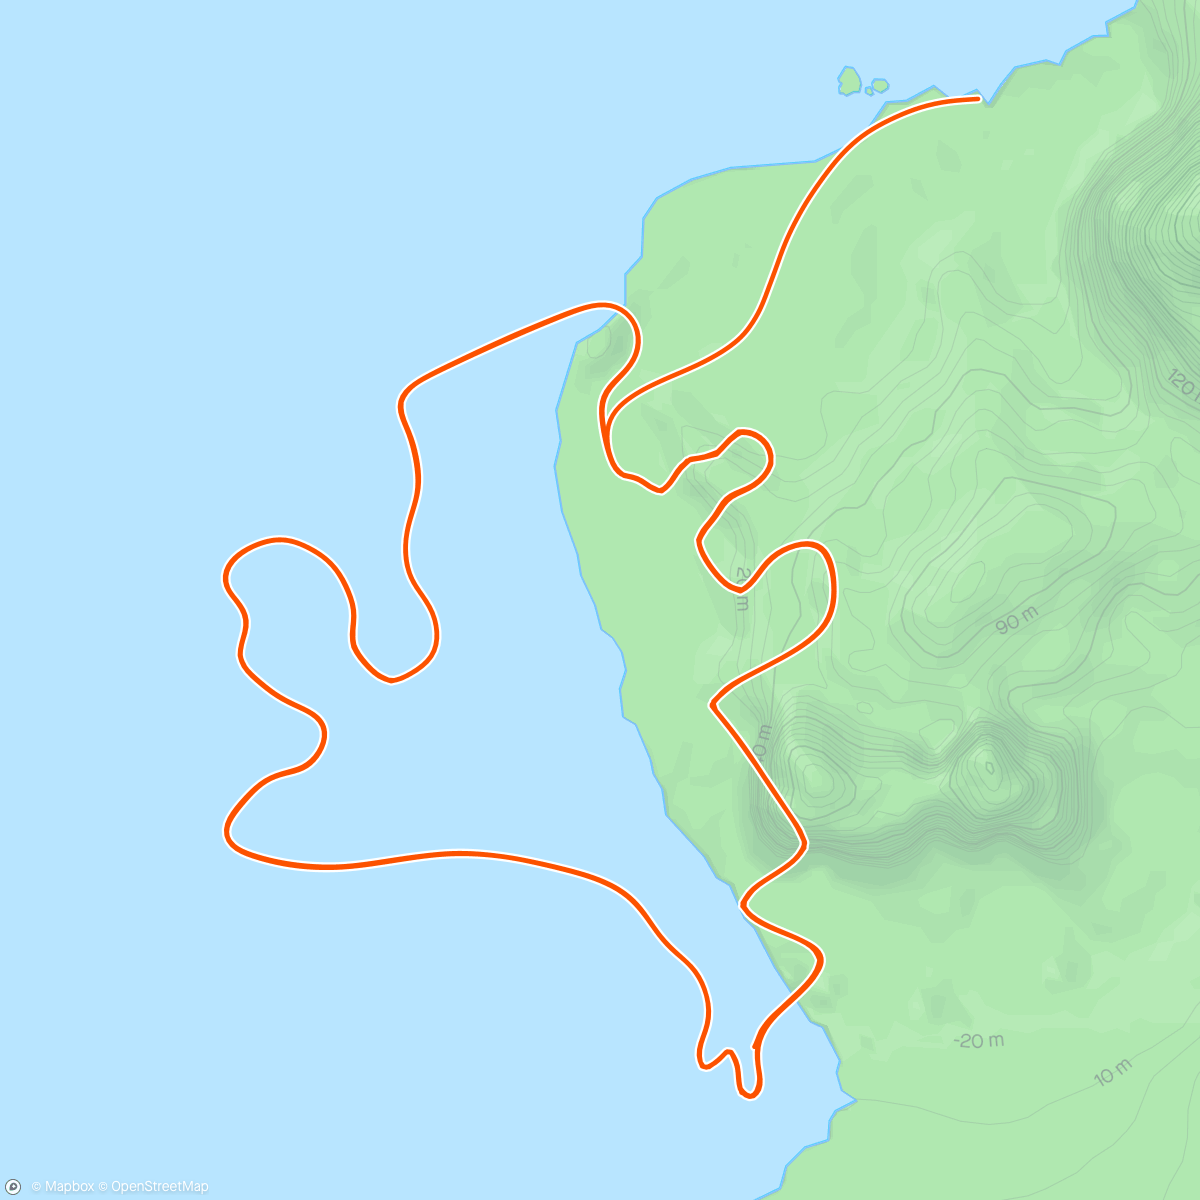 アクティビティ「Zwift - Race: Stage 3: Lap It Up - Seaside Sprint (B) on Seaside Sprint in Watopia」の地図